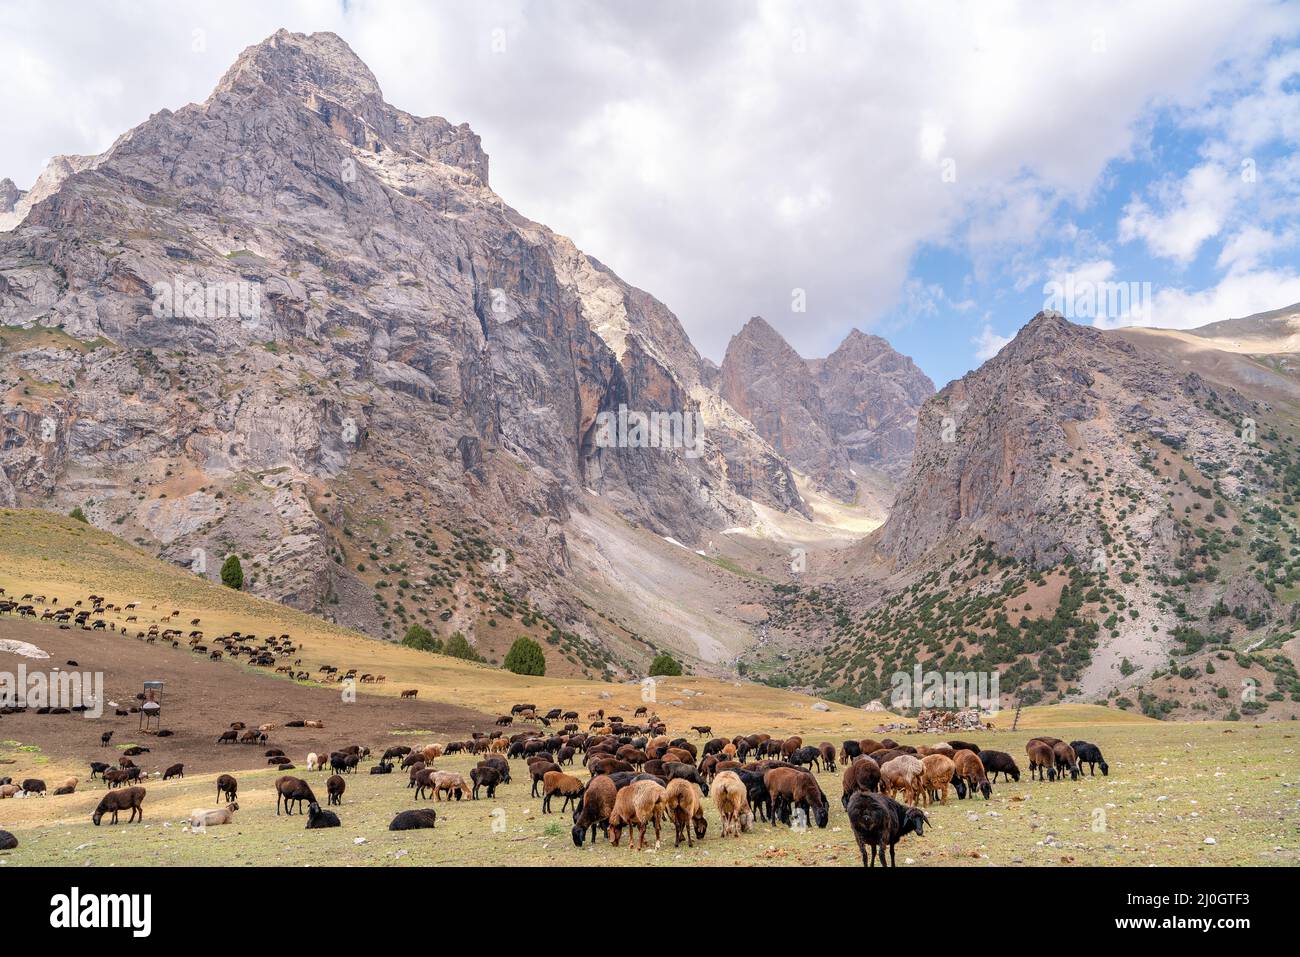 The huge sheep herd grazing on the field in Fann mountains in Tajikistan Stock Photo